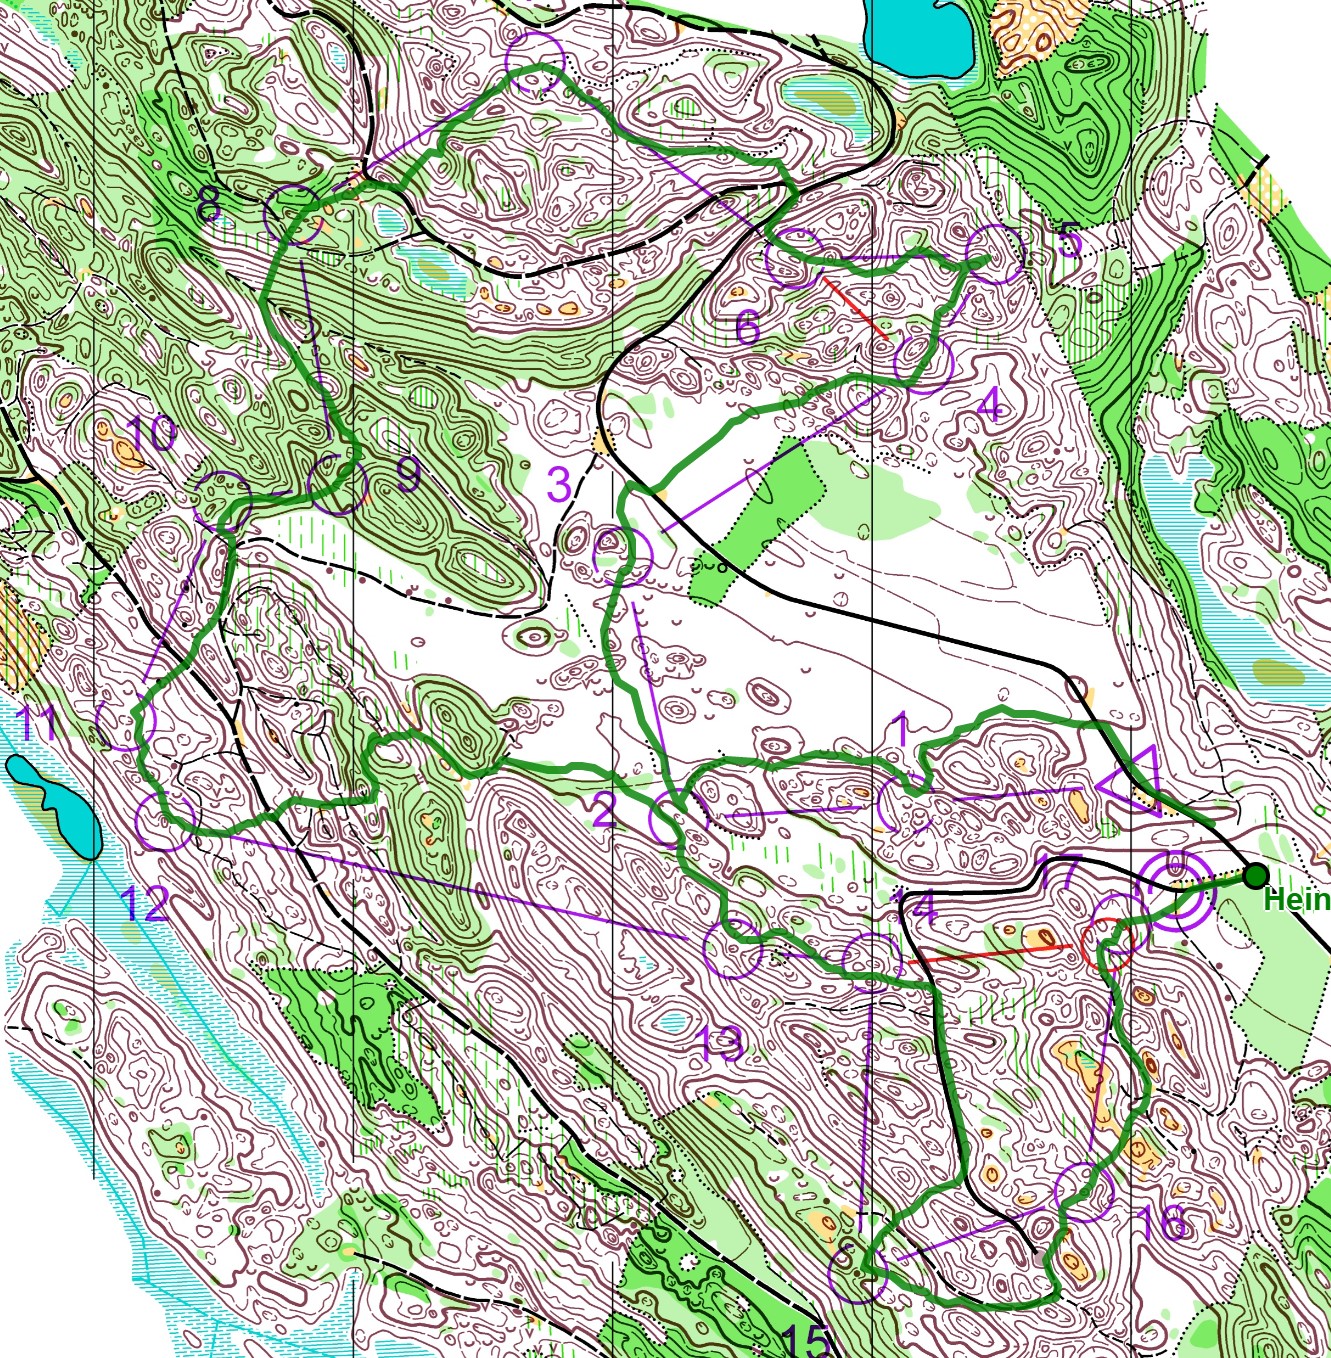 Kuikkalampi Open (15/05/2021)